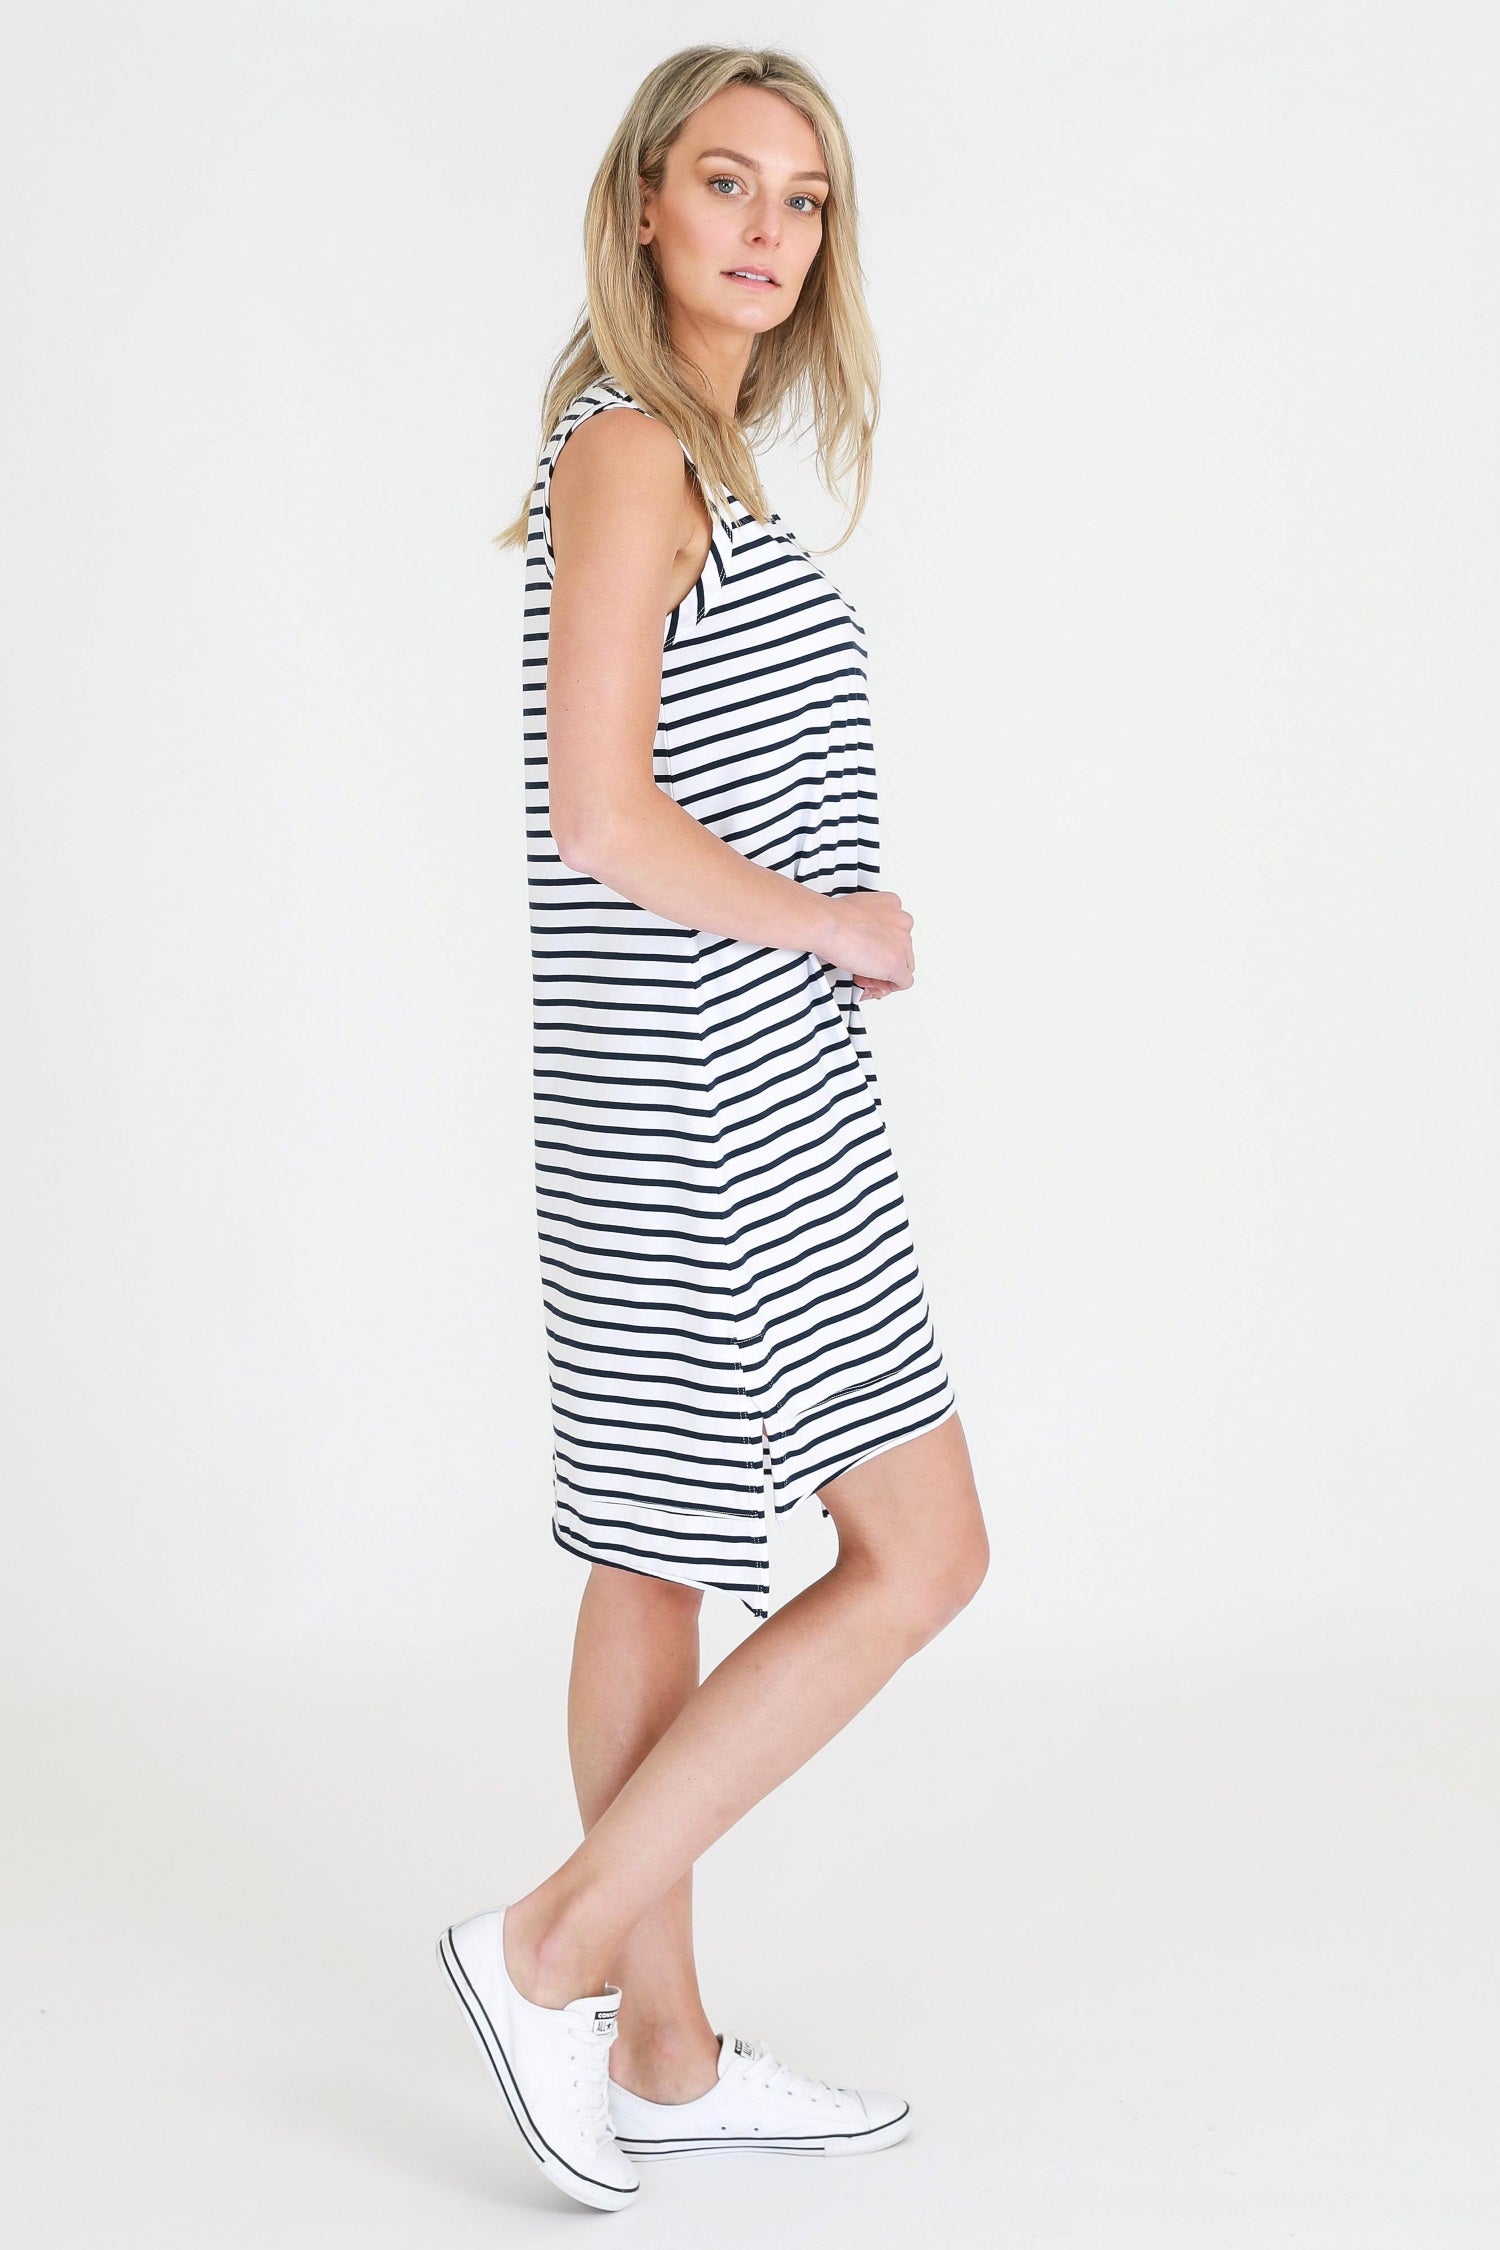 cool summer dresses #color_stripe